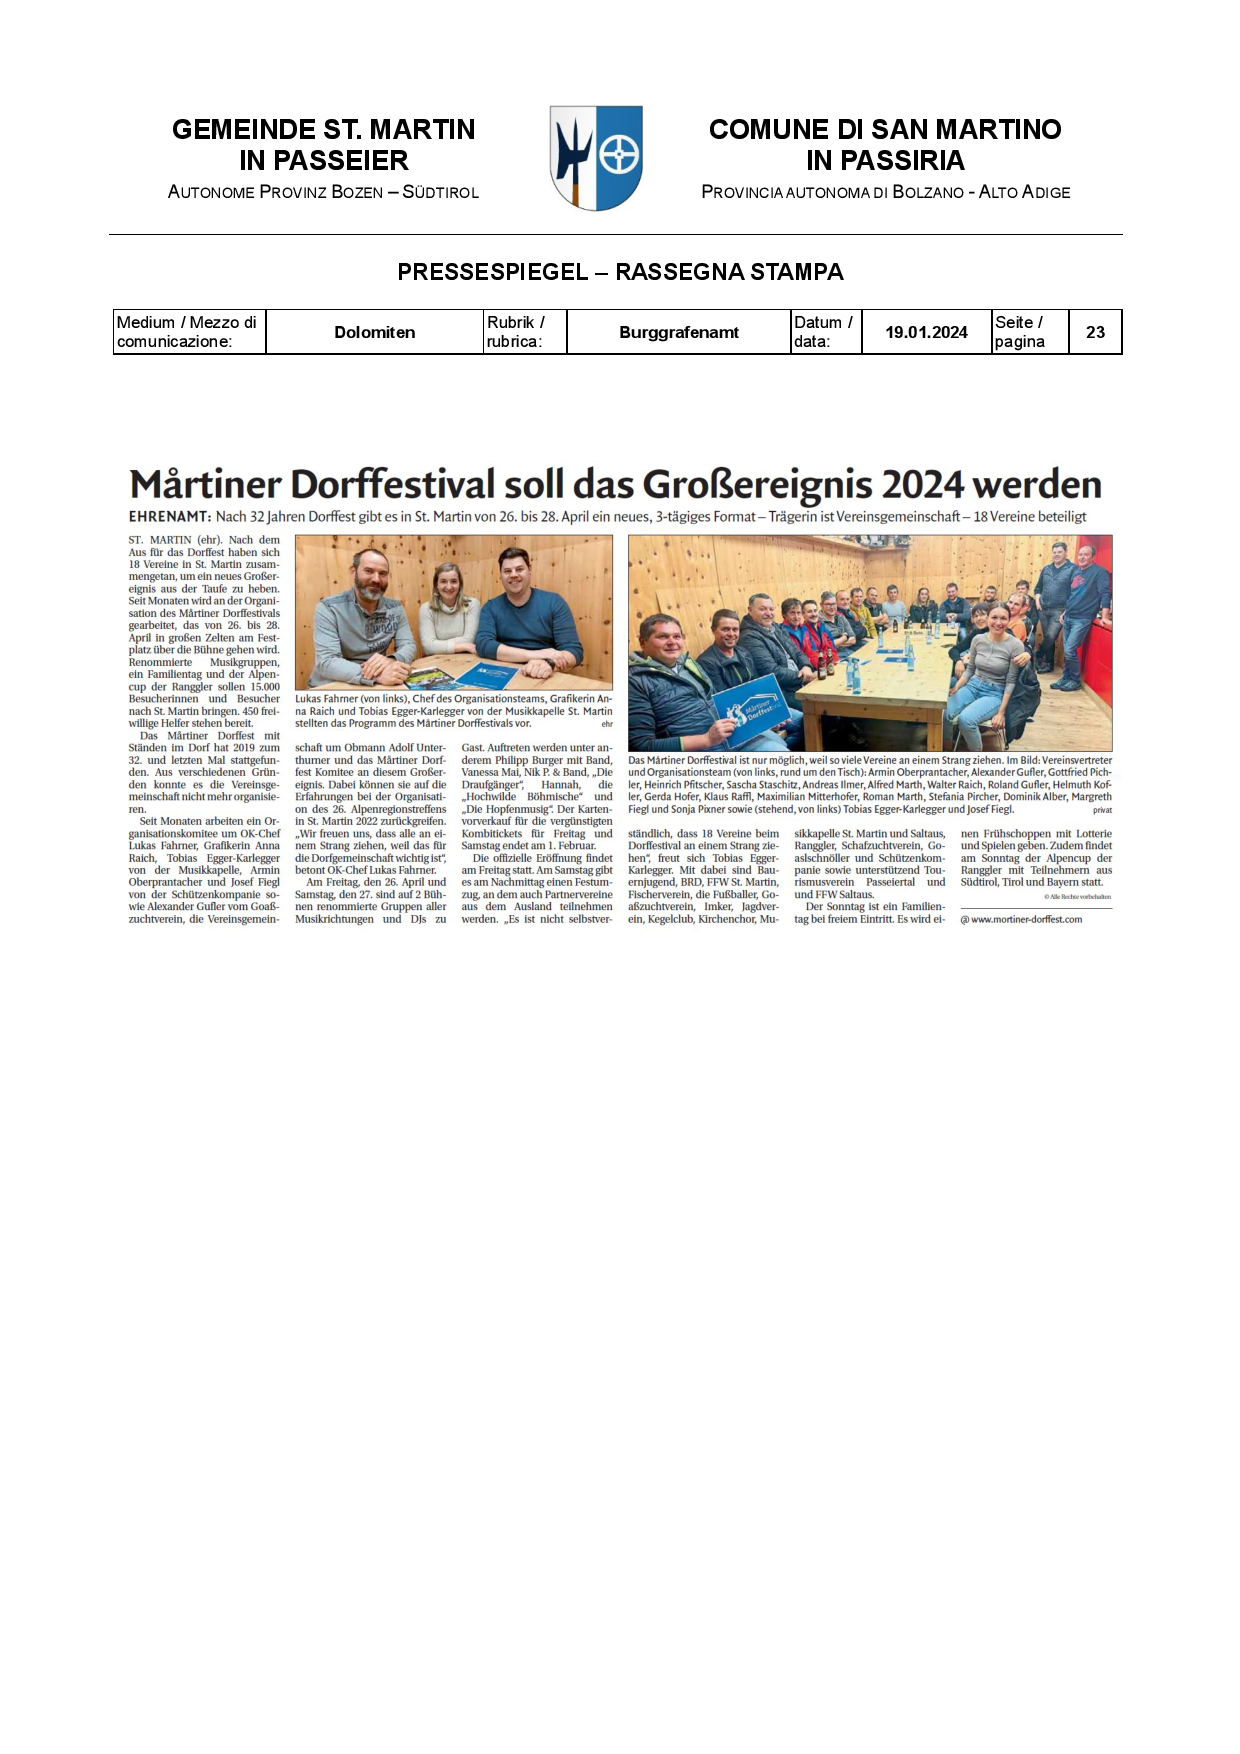 Dolomiten - Il “Martiner Dorffestival" sarà il grande evento del 2024